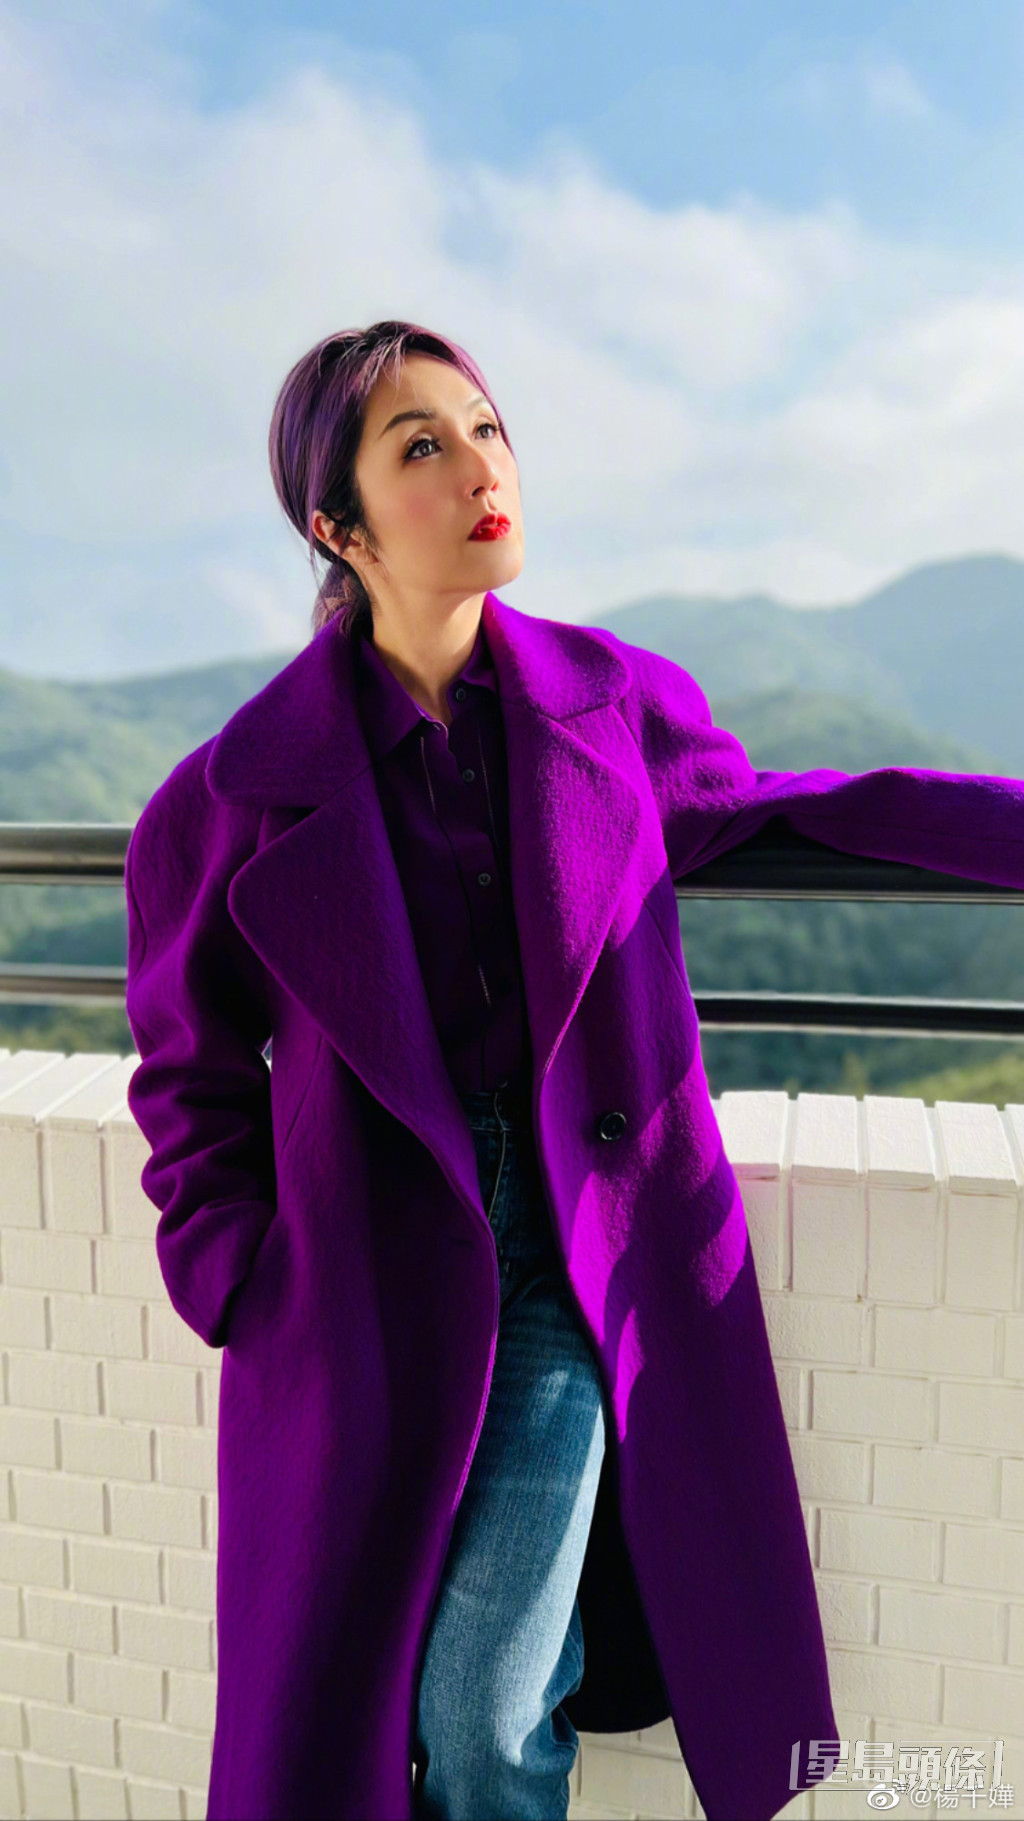 楊千嬅鍾意紫色到曾經推出歌曲《紫色》。